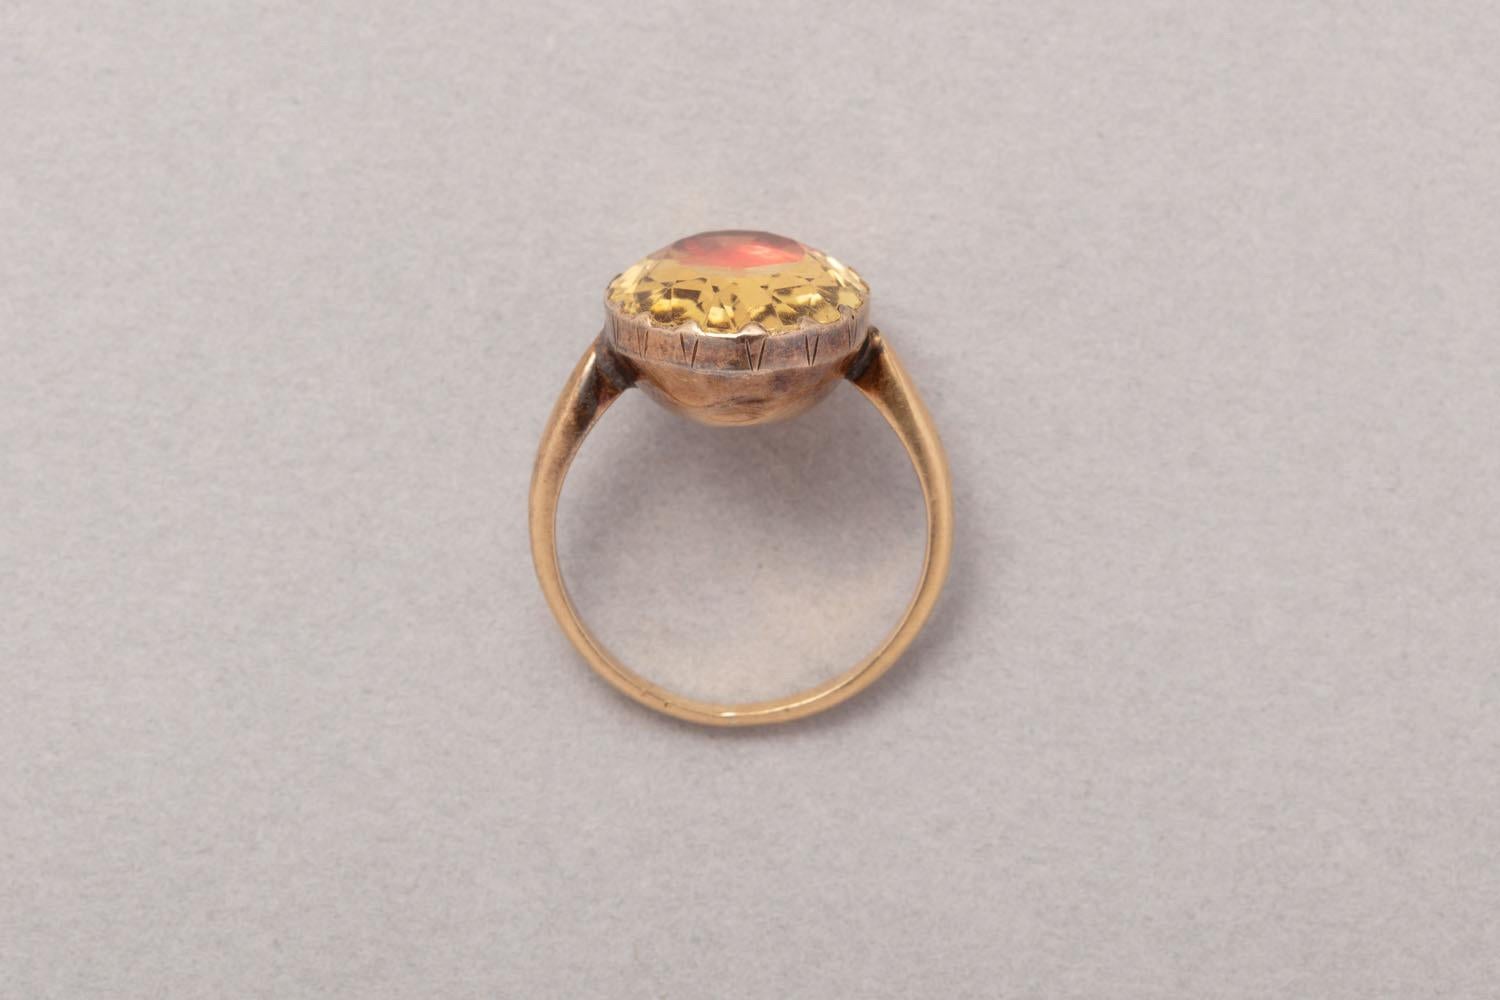 Ring aus 18 Karat Roségold, besetzt mit einem großen ovalen, facettierten Citrin auf Orangengoldfolie, Südfrankreich, um 1920
Gewicht: 5,3 Gramm
Ringgröße: 17,25 mm / 7 US
Breite: 1,5 - 17 mm
